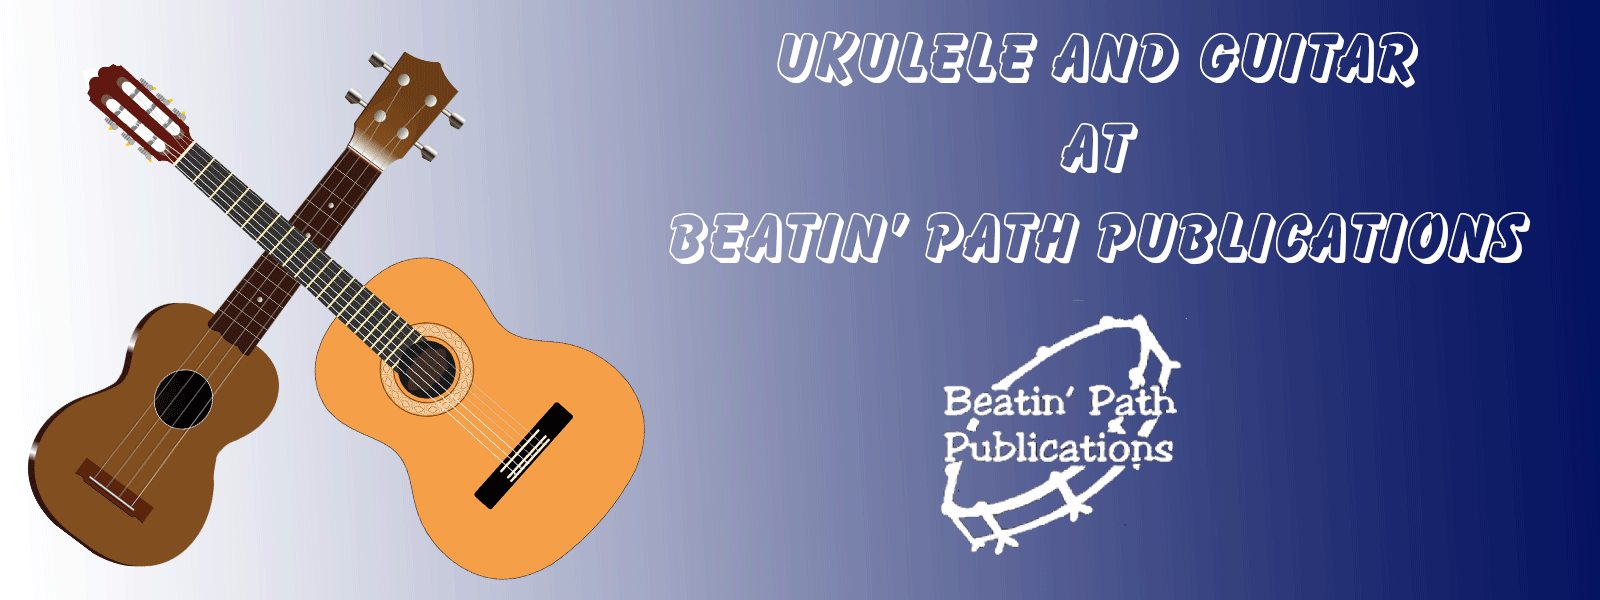 Ukulele Resources at Beatin' Path Publications